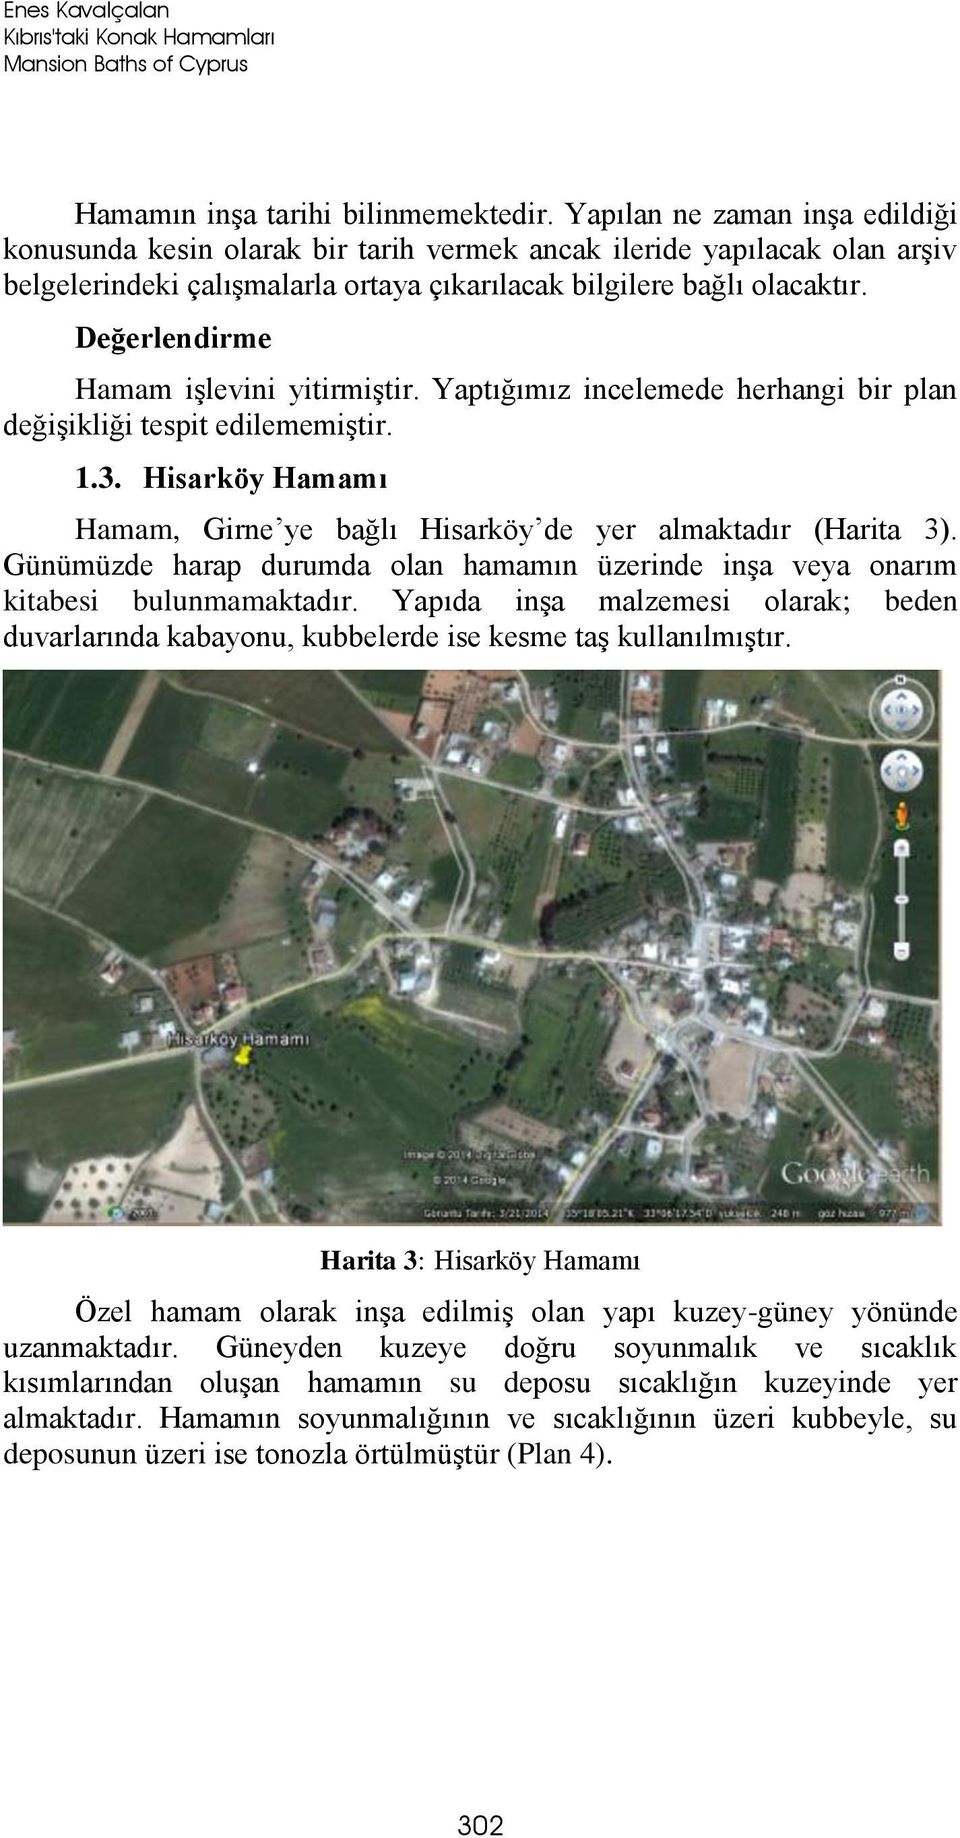 Değerlendirme Hamam işlevini yitirmiştir. Yaptığımız incelemede herhangi bir plan değişikliği tespit edilememiştir. 1.3. Hisarköy Hamamı Hamam, Girne ye bağlı Hisarköy de yer almaktadır (Harita 3).